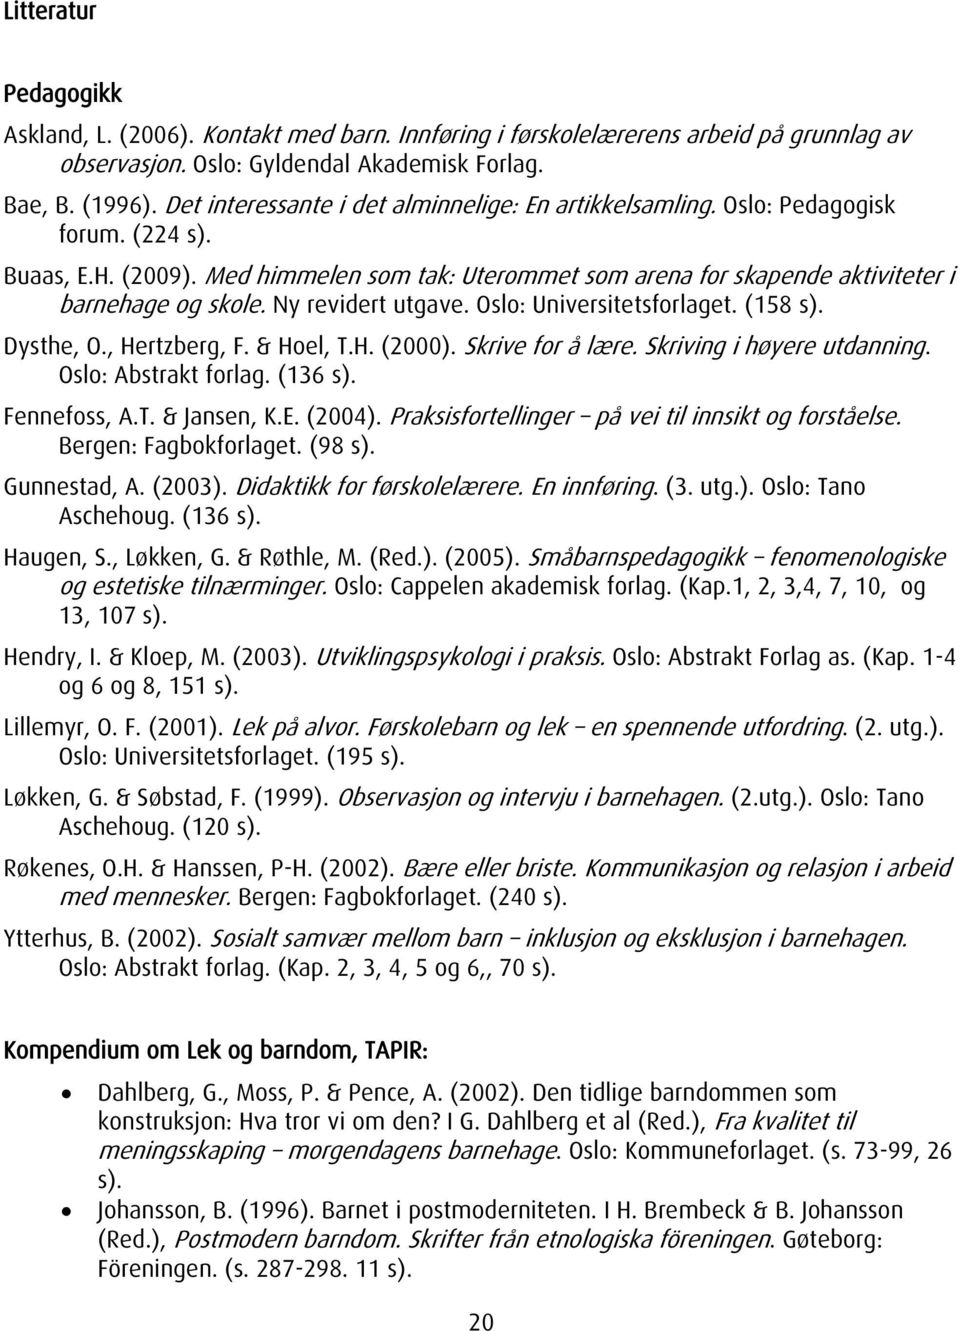 Ny revidert utgave. Oslo: Universitetsforlaget. (158 s). Dysthe, O., Hertzberg, F. & Hoel, T.H. (2000). Skrive for å lære. Skriving i høyere utdanning. Oslo: Abstrakt forlag. (136 s). Fennefoss, A.T. & Jansen, K.